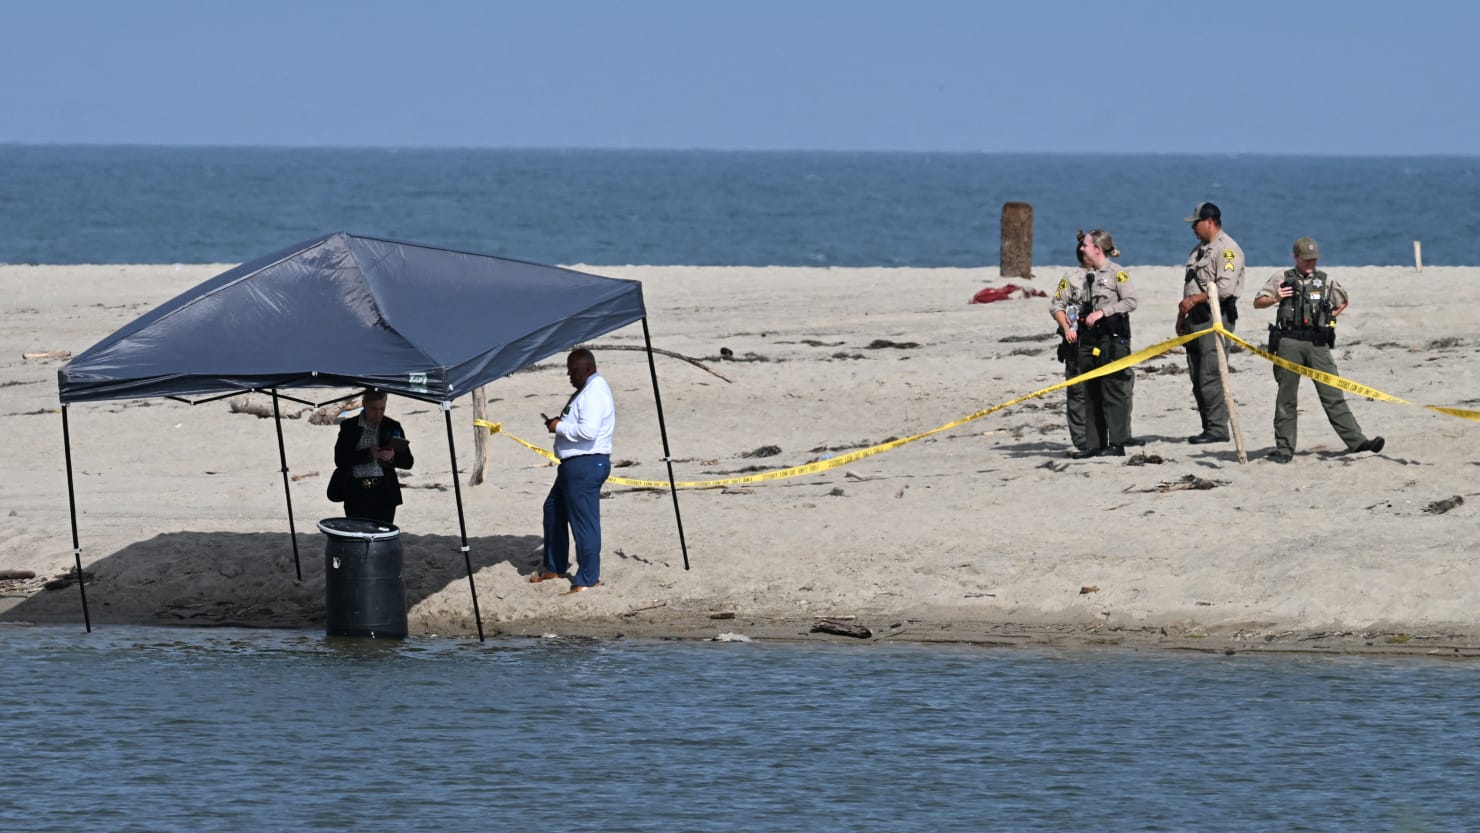 Naked Body Found Stuffed Inside Barrel by Malibu Lifeguard Identified picture photo